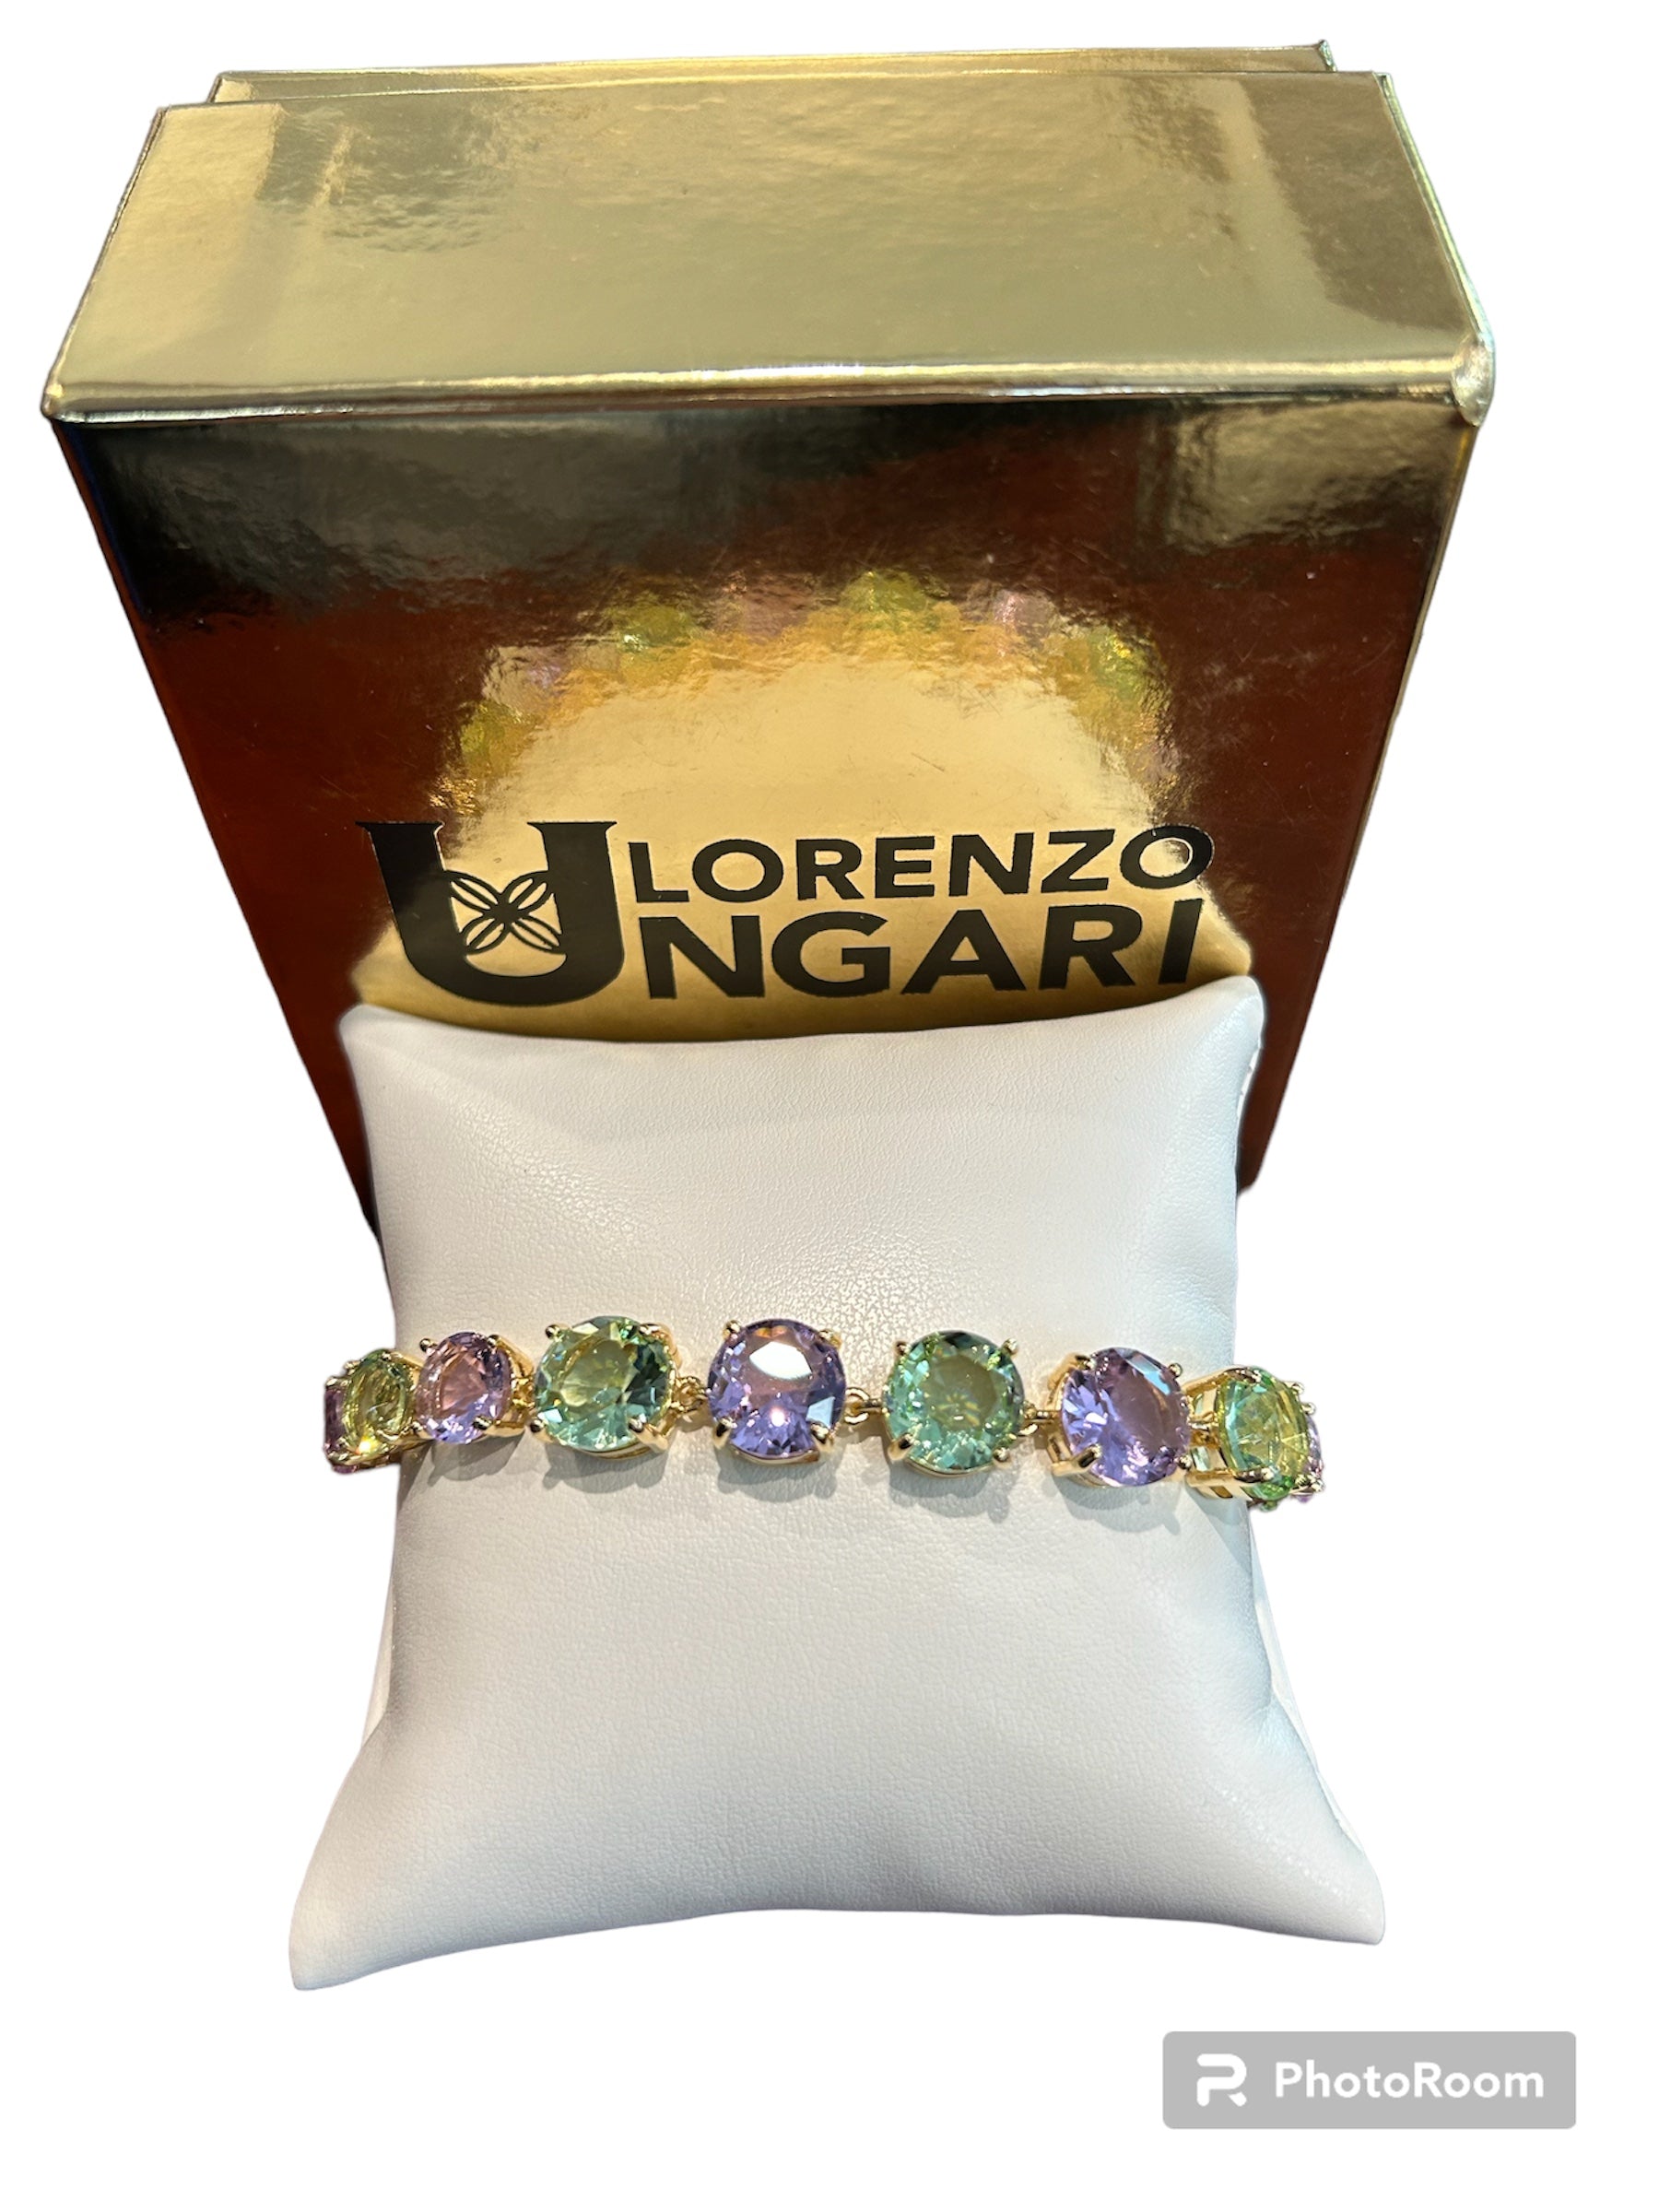 IL Mio Re - Gilt bronze bracelet with purple and aqua green stones - ILMIORE BR 021 ACQ